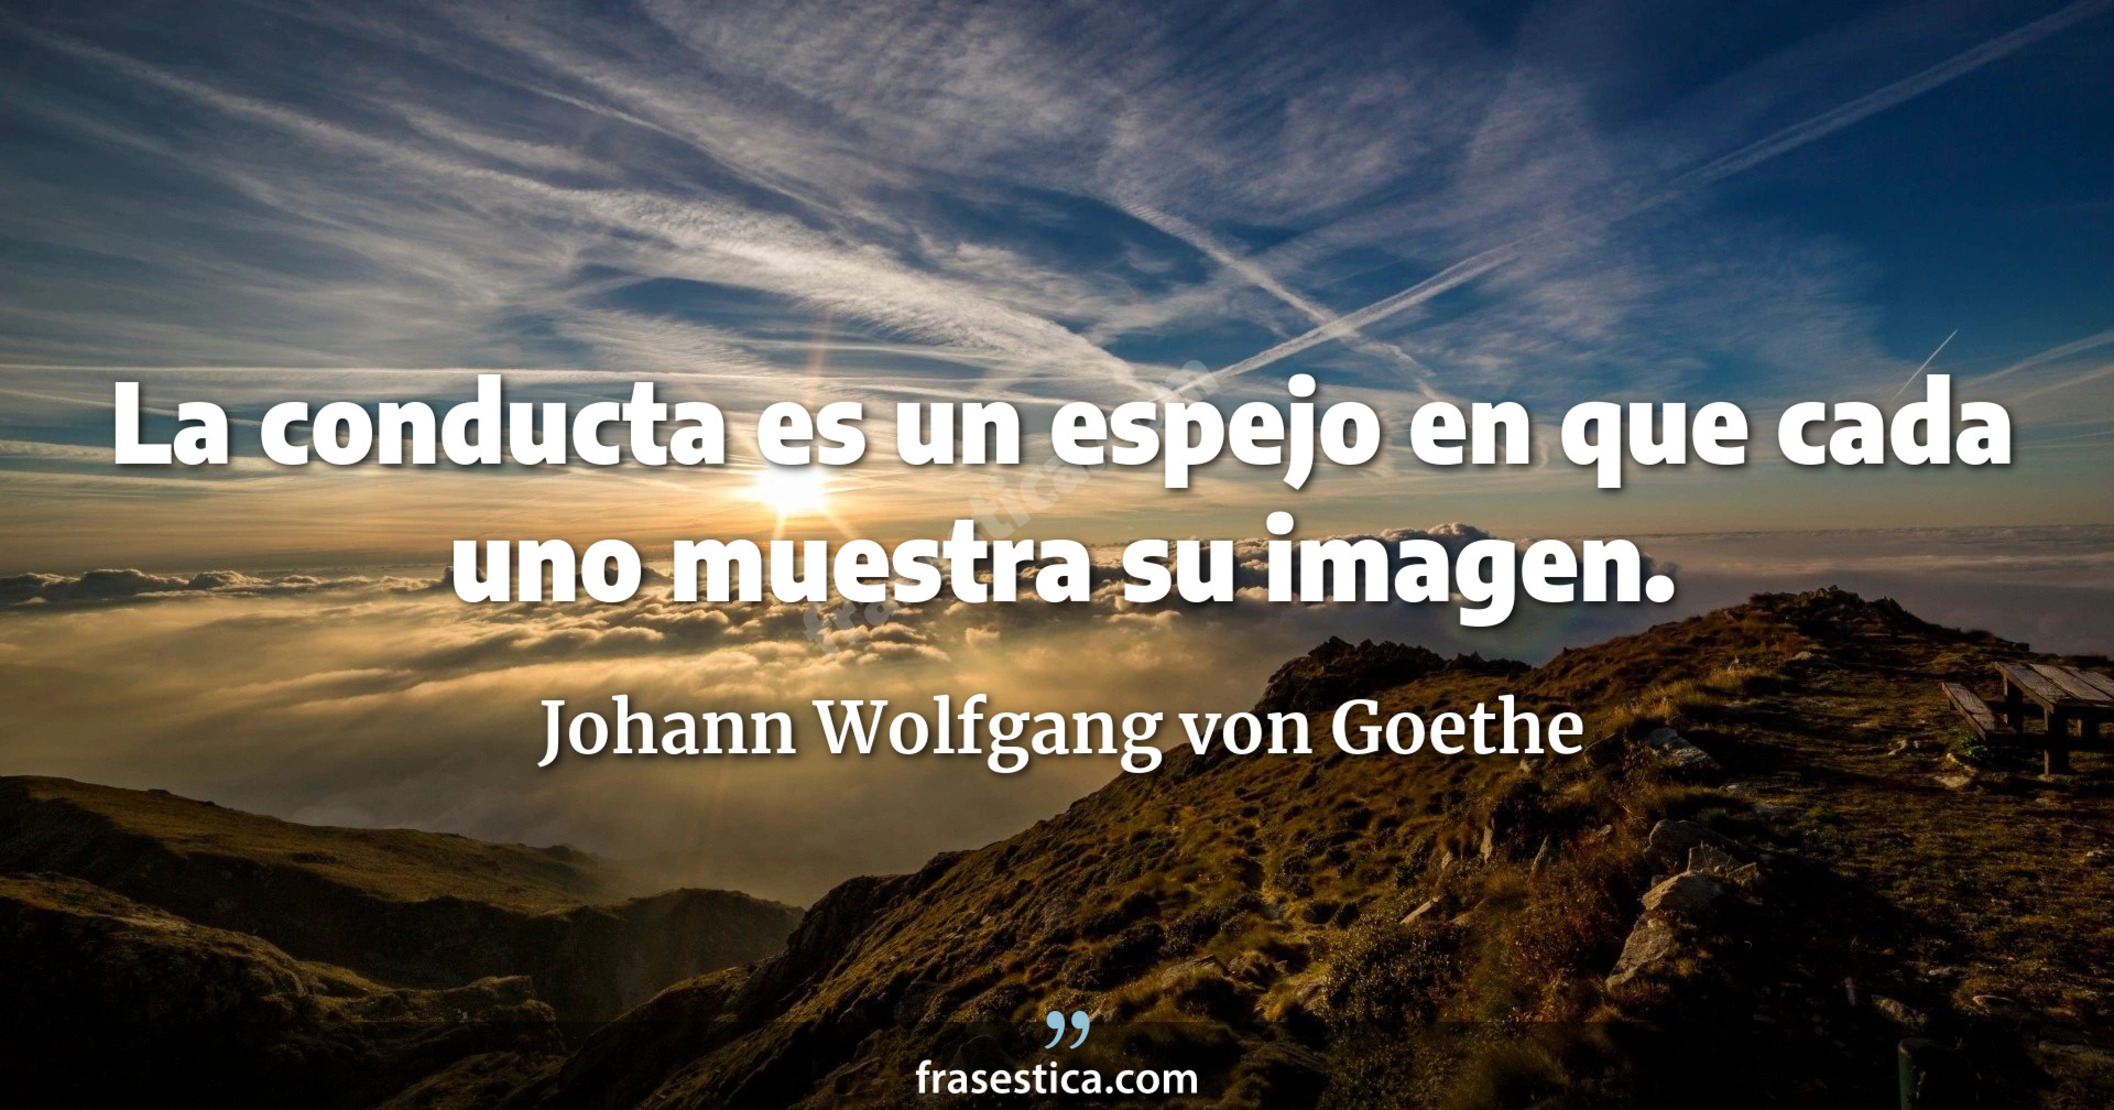 La conducta es un espejo en que cada uno muestra su imagen. - Johann Wolfgang von Goethe